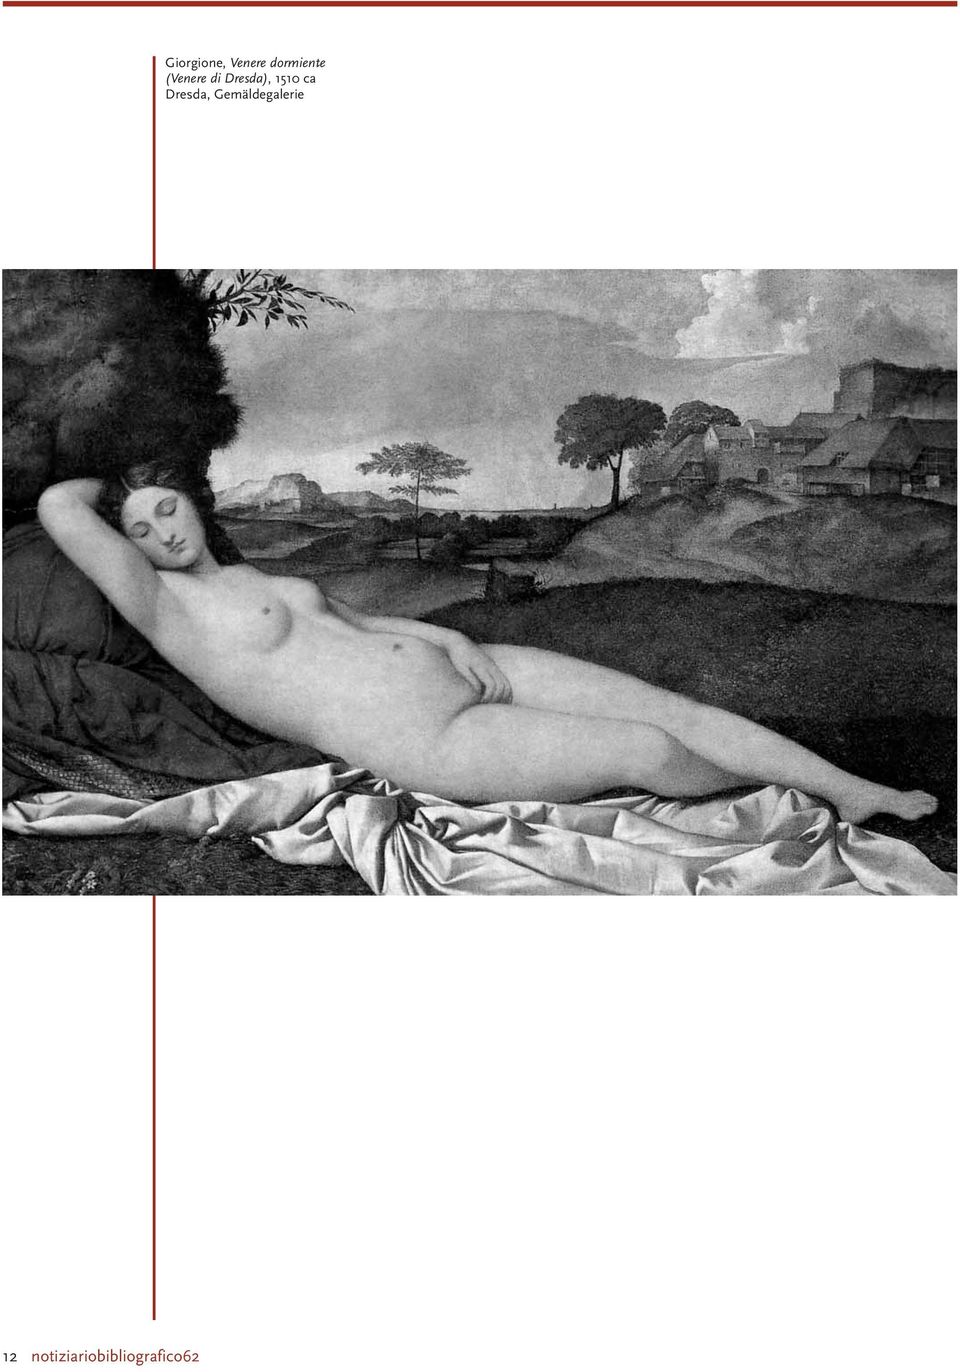 Giorgione, Venere